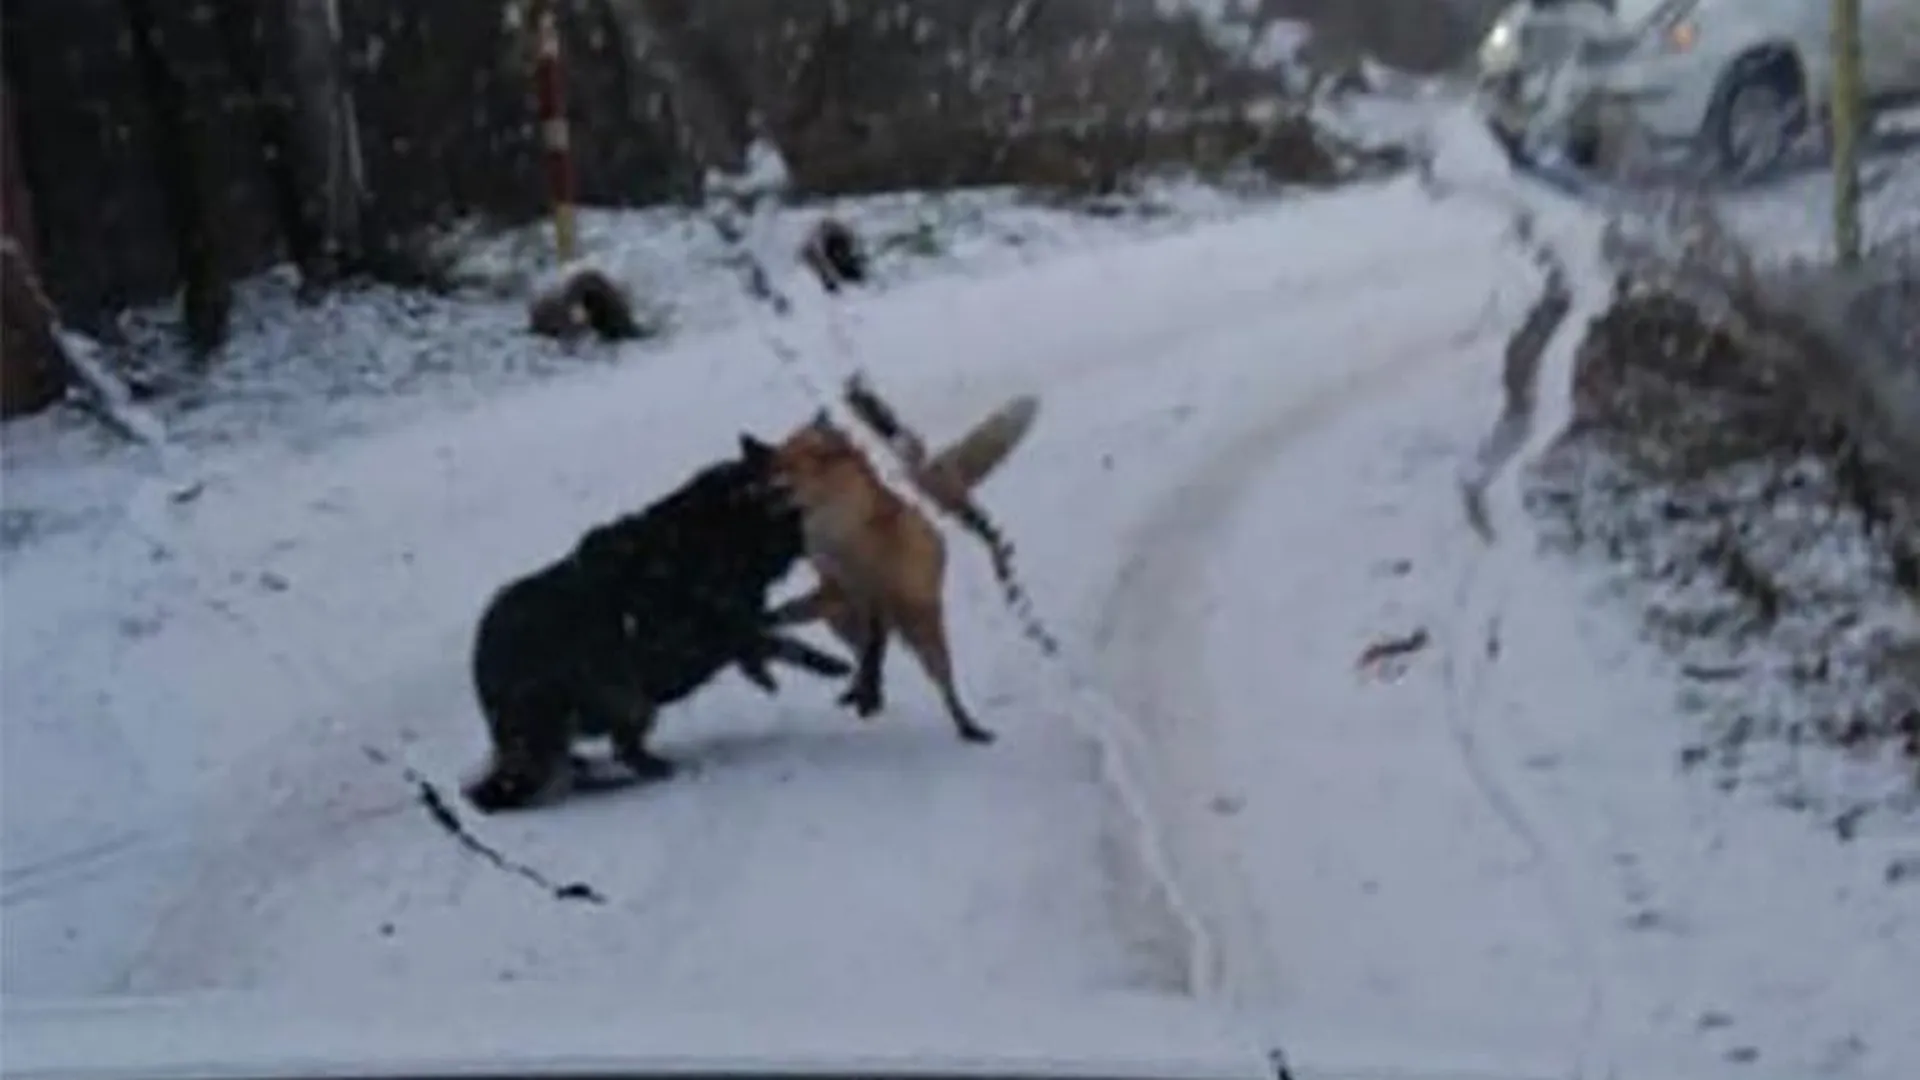 Сражение лисы и собаки парализовало движение автомобилей в Орехово-Зуевском округе